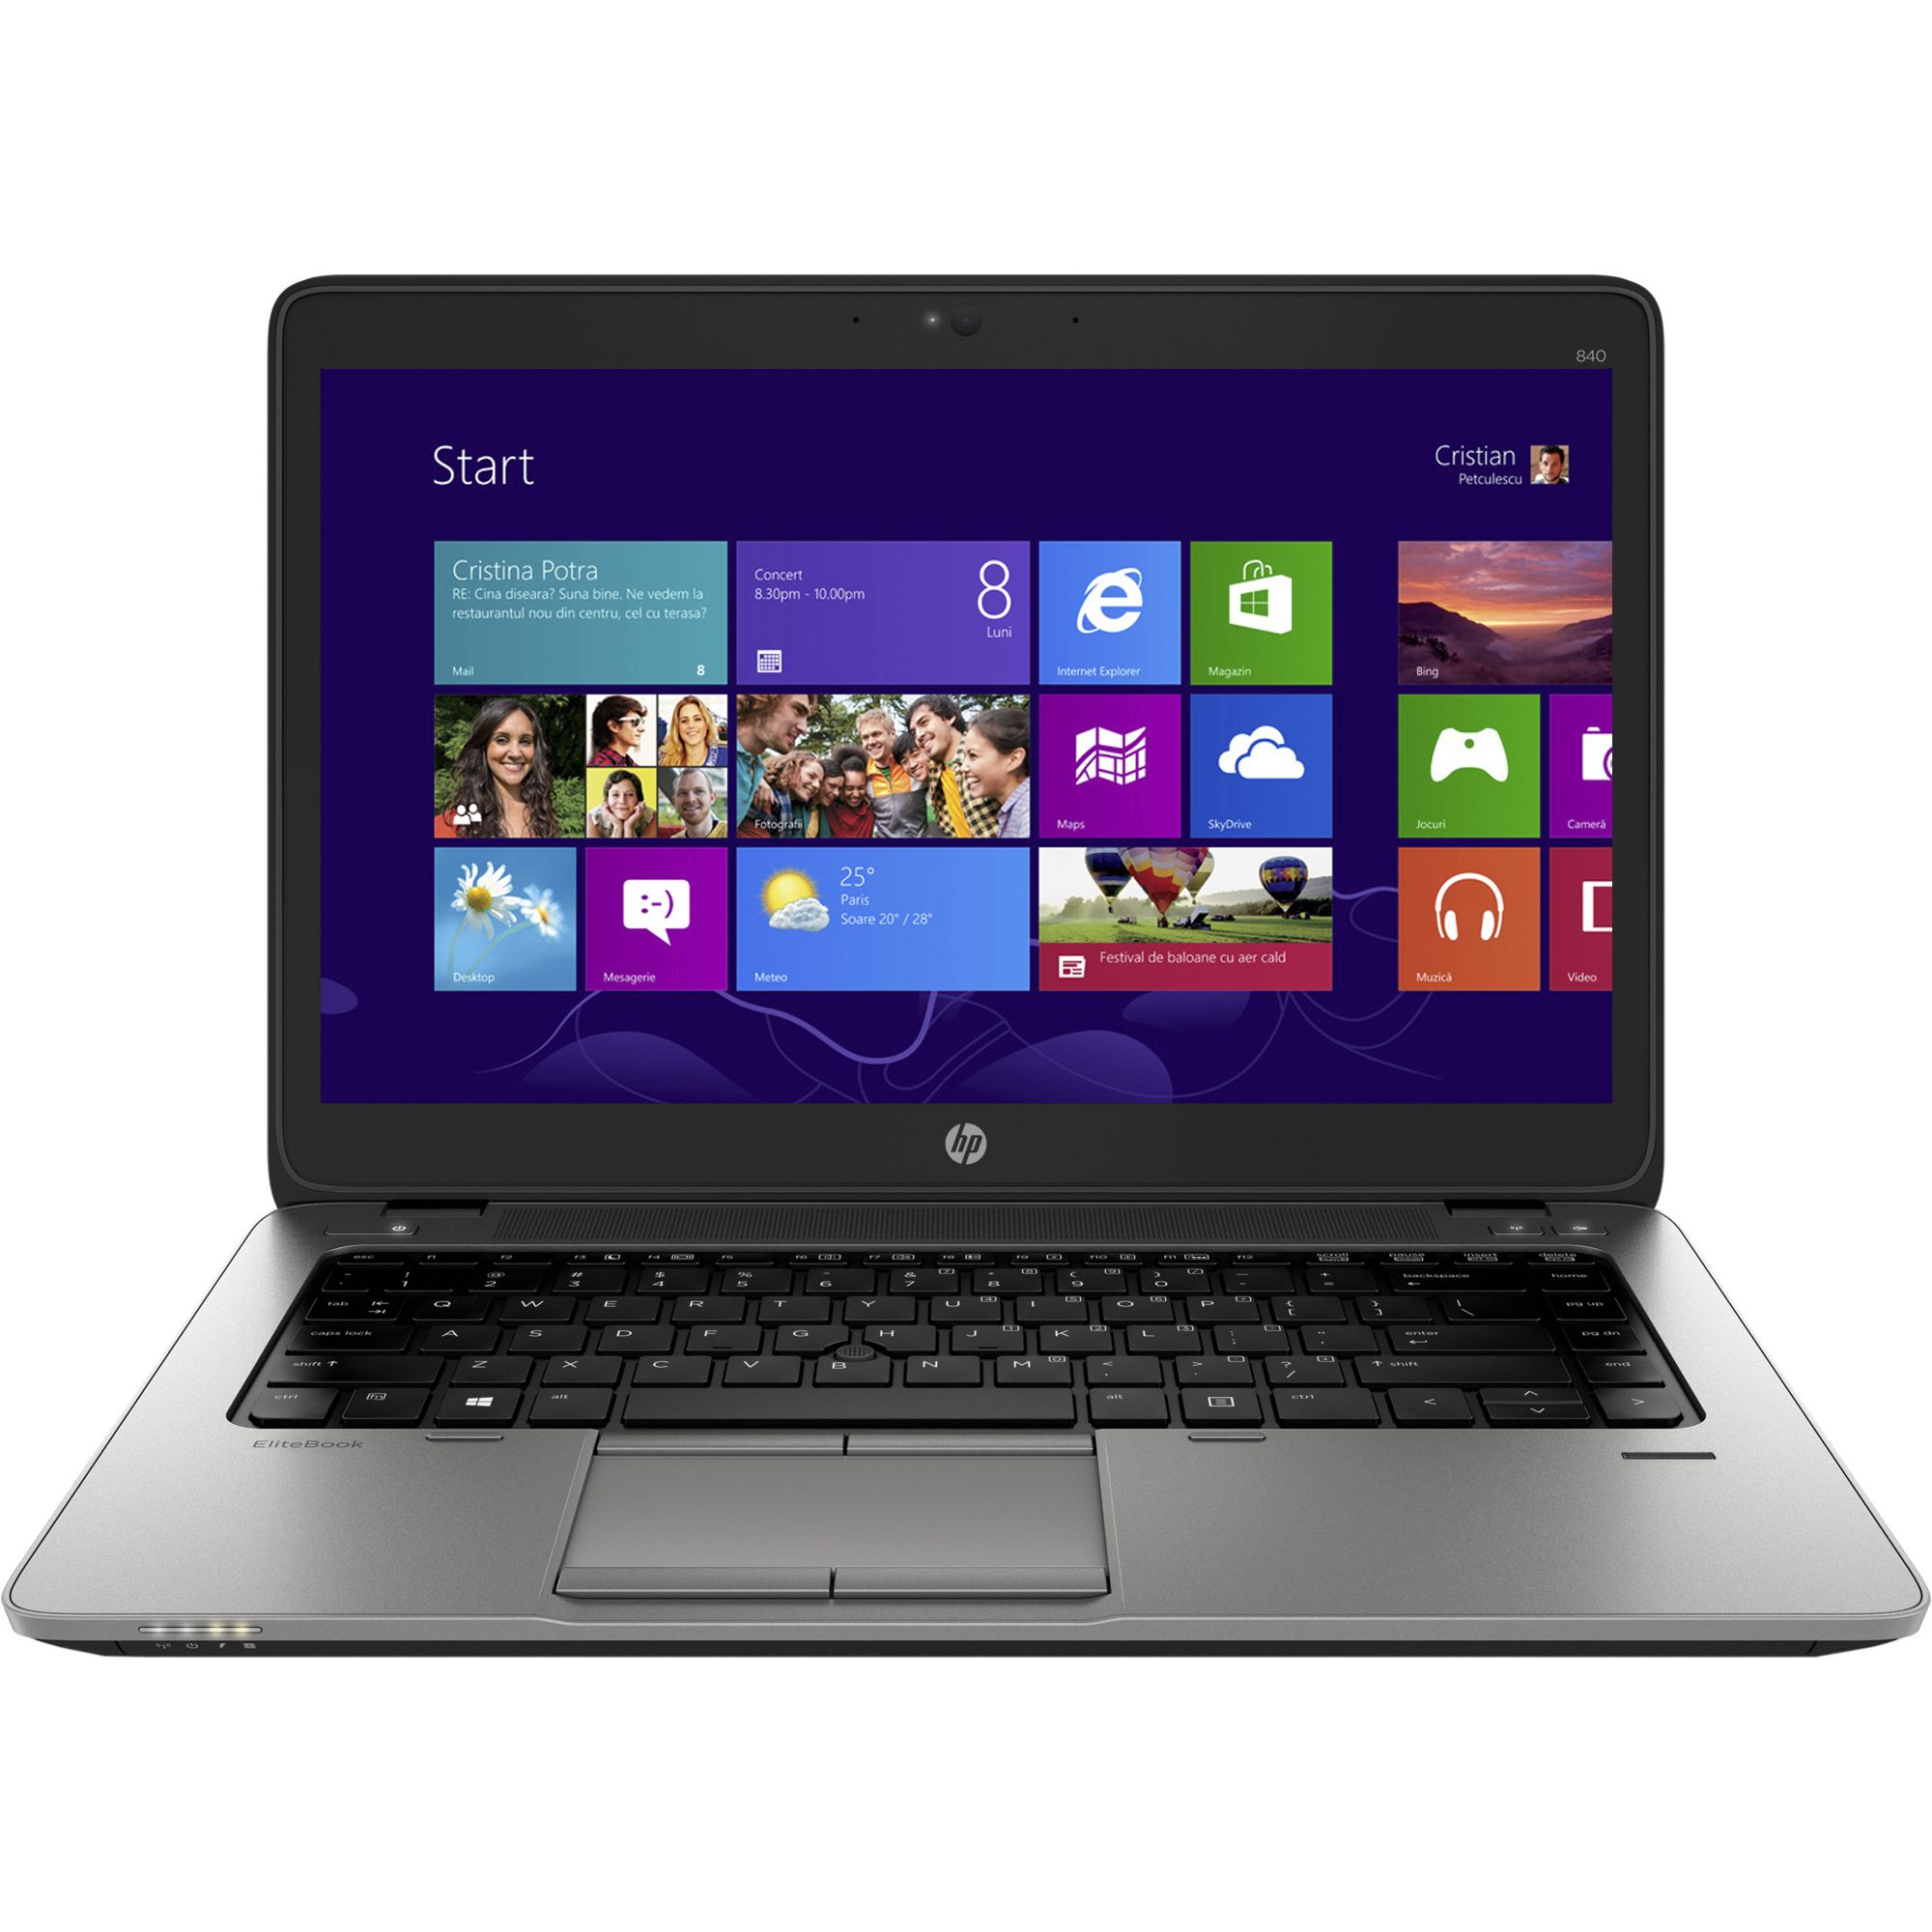  Laptop HP EliteBook 820 G2, Intel Core i5-5200U, 8GB DDR3, SSD 256GB, Intel HD Graphics, Windows 8.1 Pro 